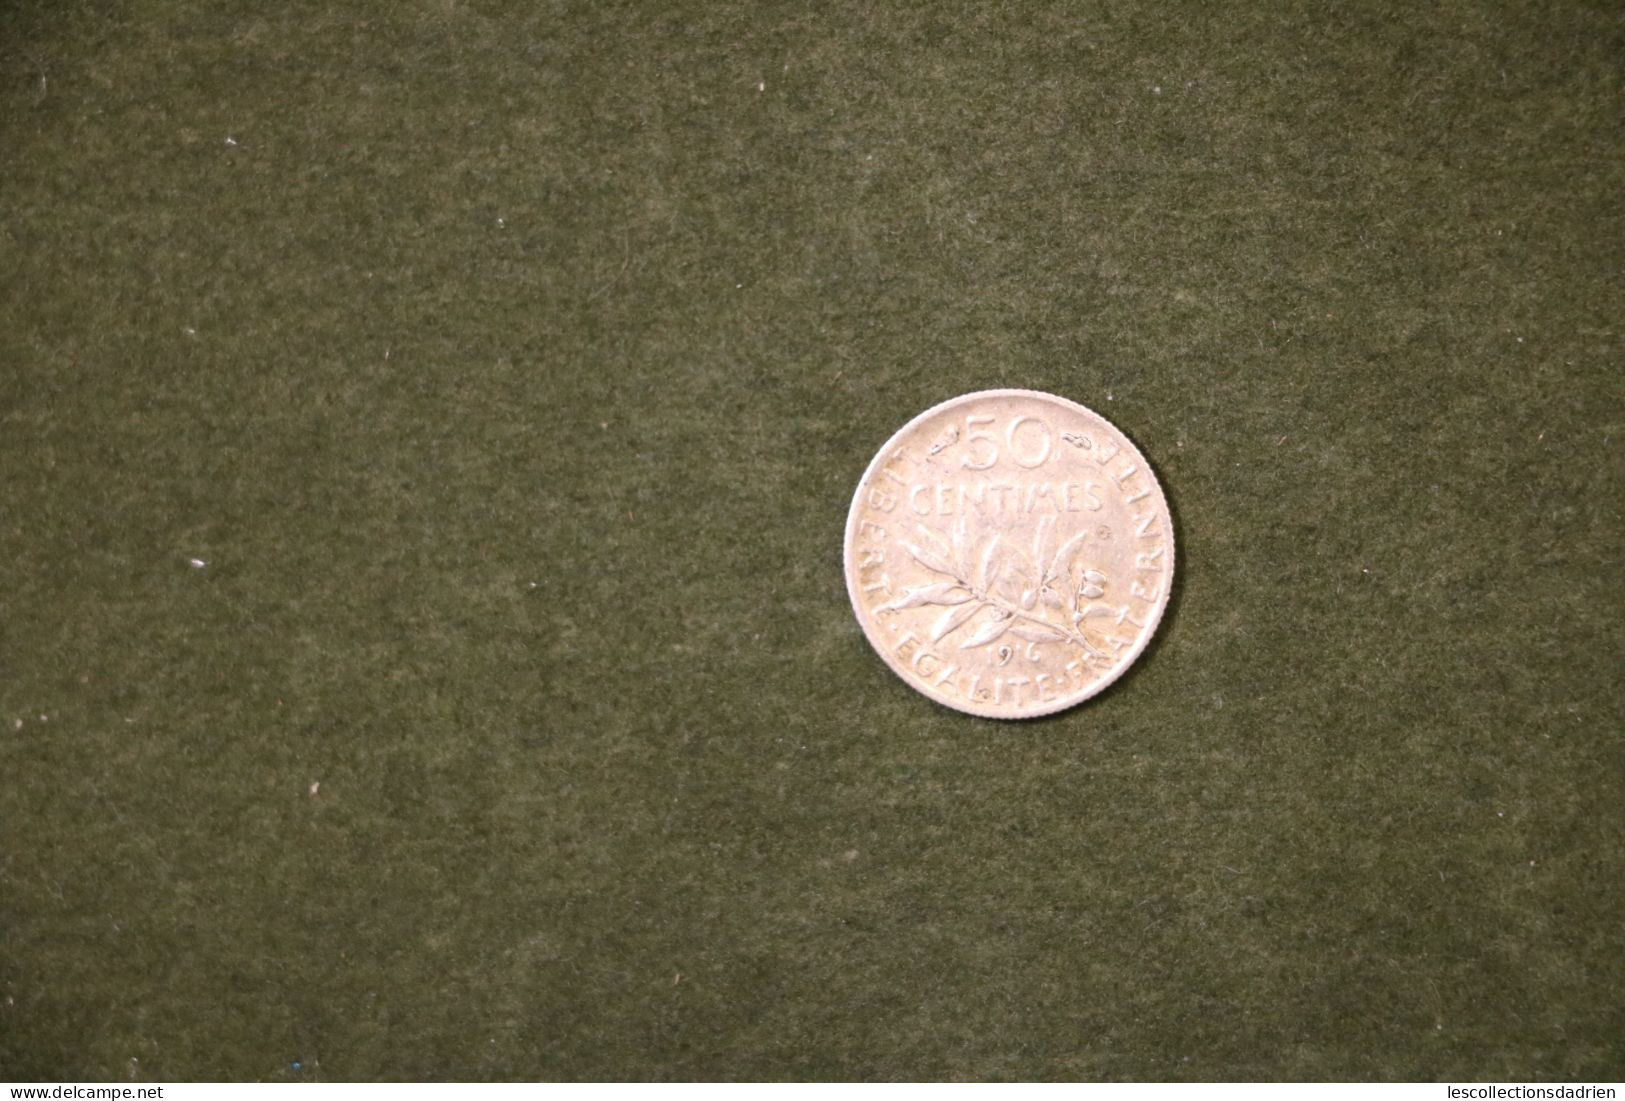 Pièce En Argent Française 50 Centimes 1916  - French Silver Coin - 50 Centimes